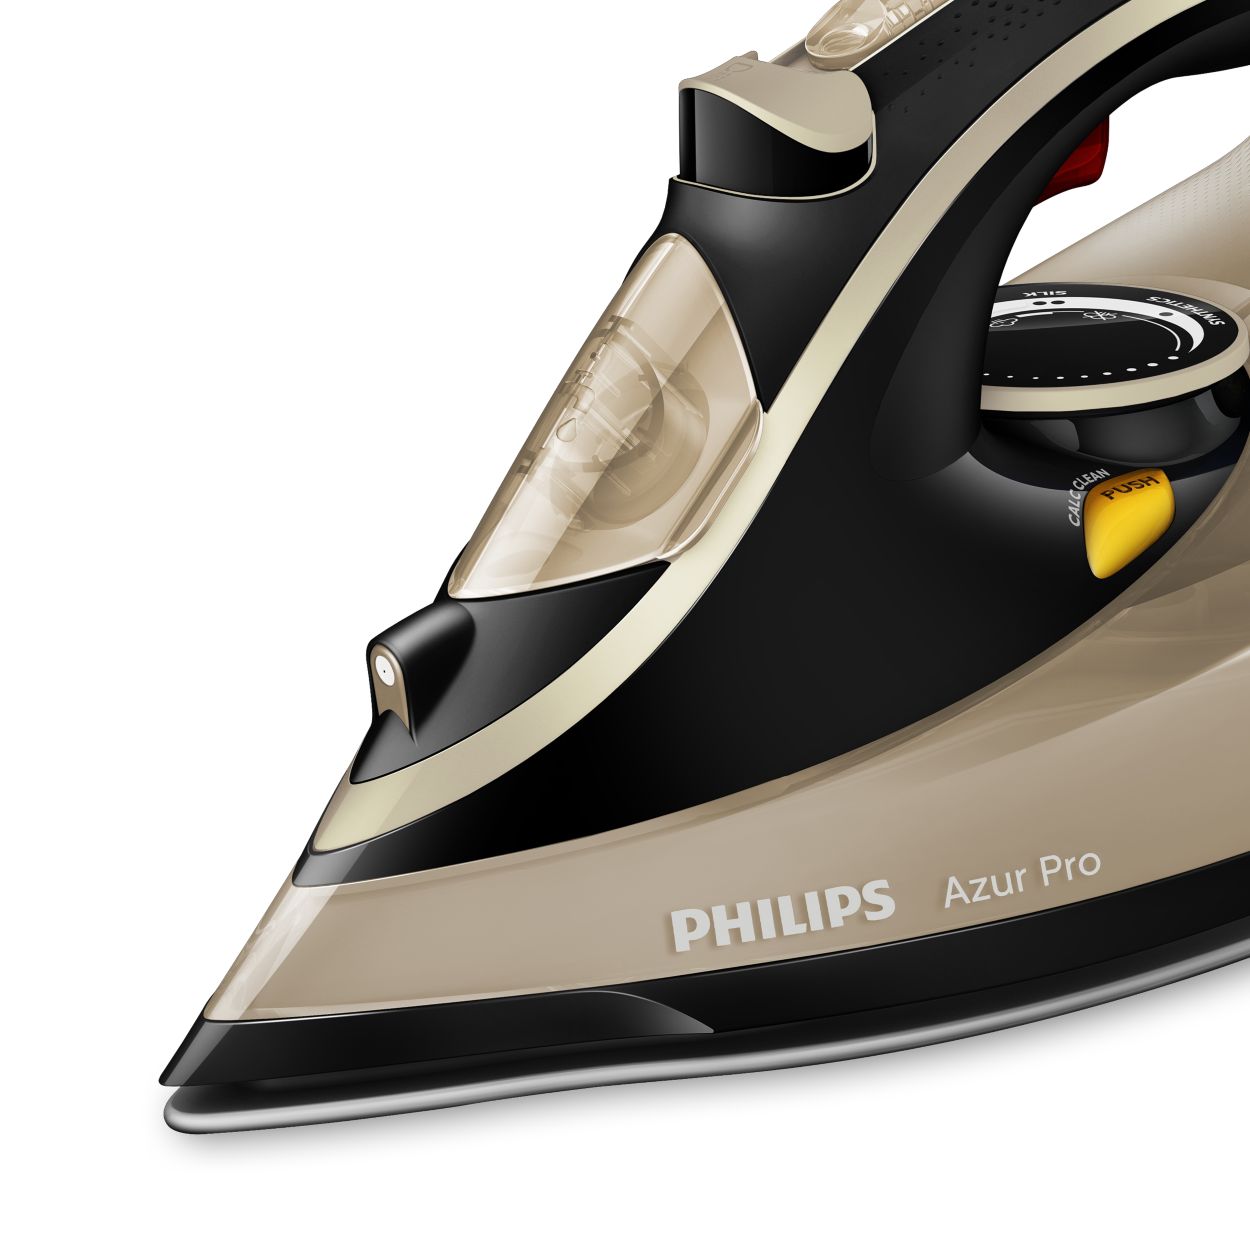 Утюг филипс видео. Утюг Philips Azur Pro 3000w. Philips gc4887/30 Azur Pro. Утюг Филипс Азур. Утюг Филипс Azur Pro 4885.